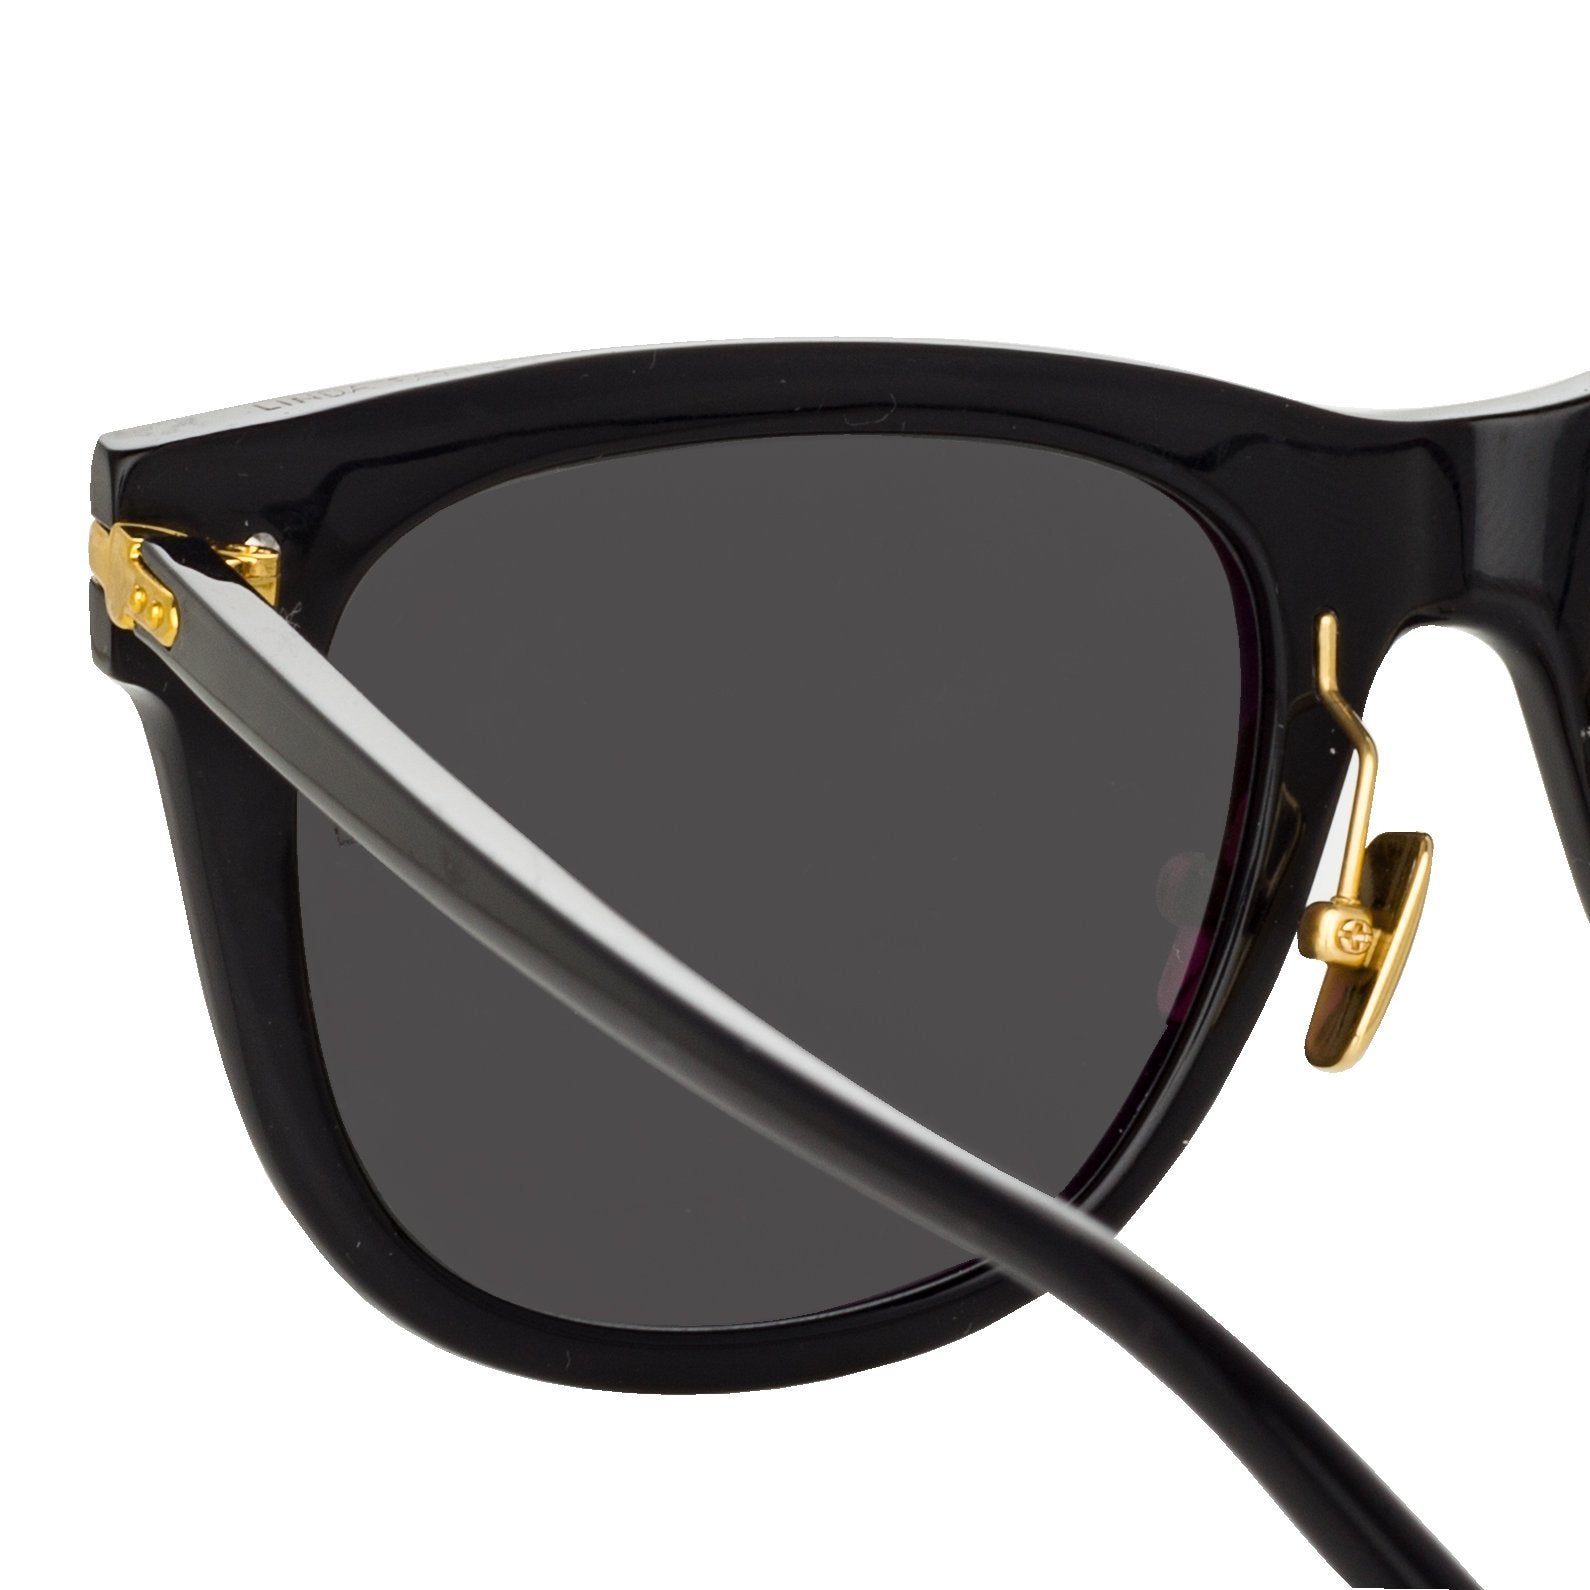 Color_LF43C4SUN - Chrysler D-Frame Sunglasses in Black